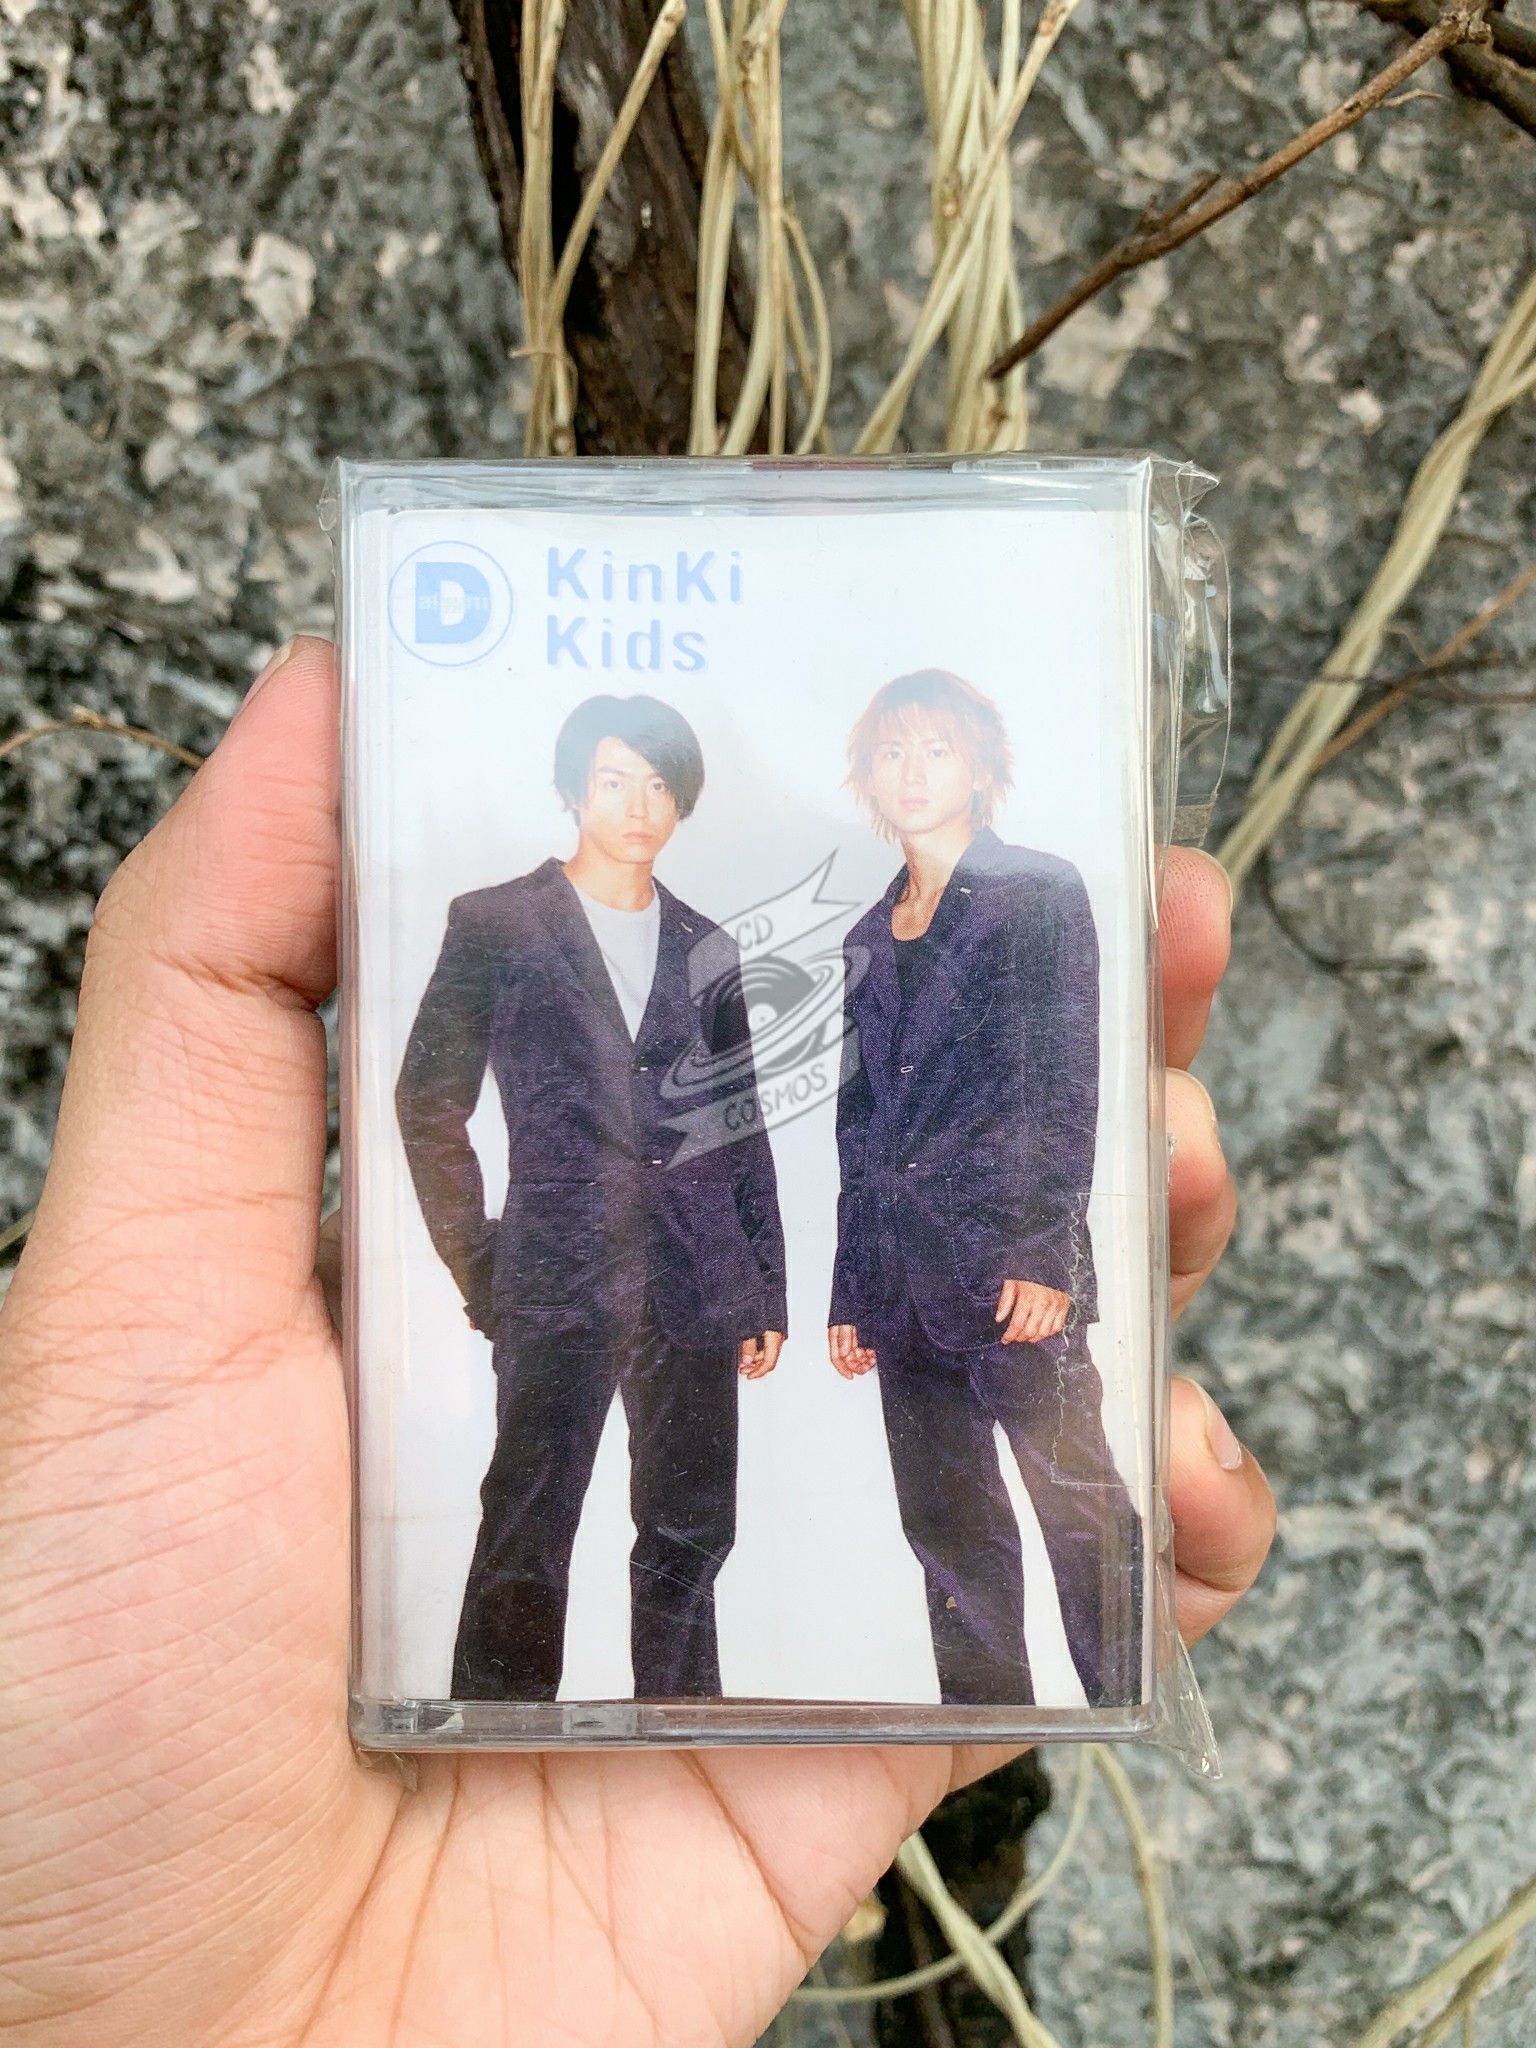 KinKi Kids - D album - cdcosmos